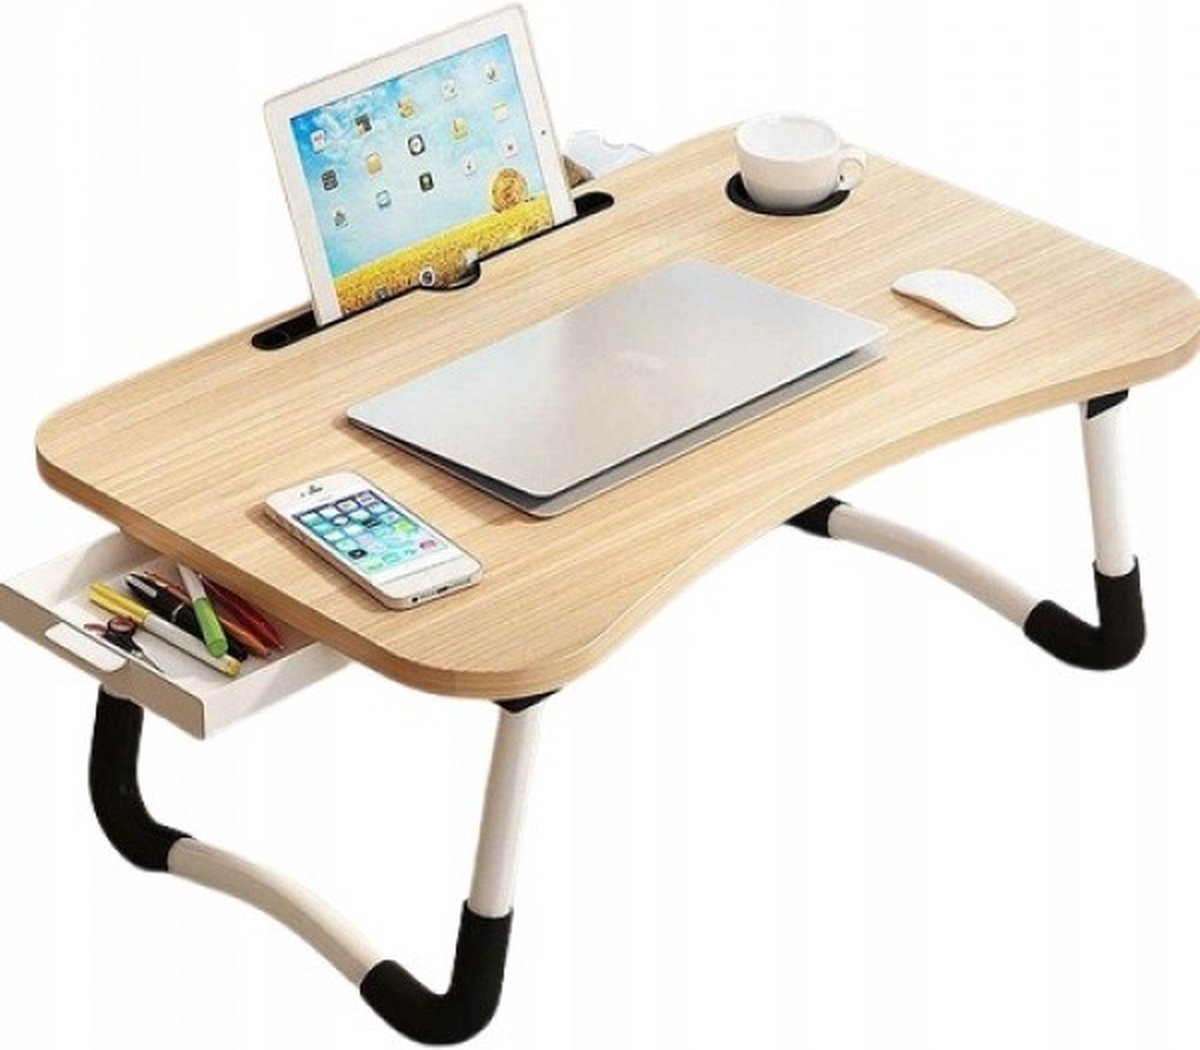 UP / Bedtafel voor laptop, iPad, tablet, boek, huiswerk of ontbijt op bed / Opvouwbare laptop tafel met bekerhouder / 60x40x28 / hout